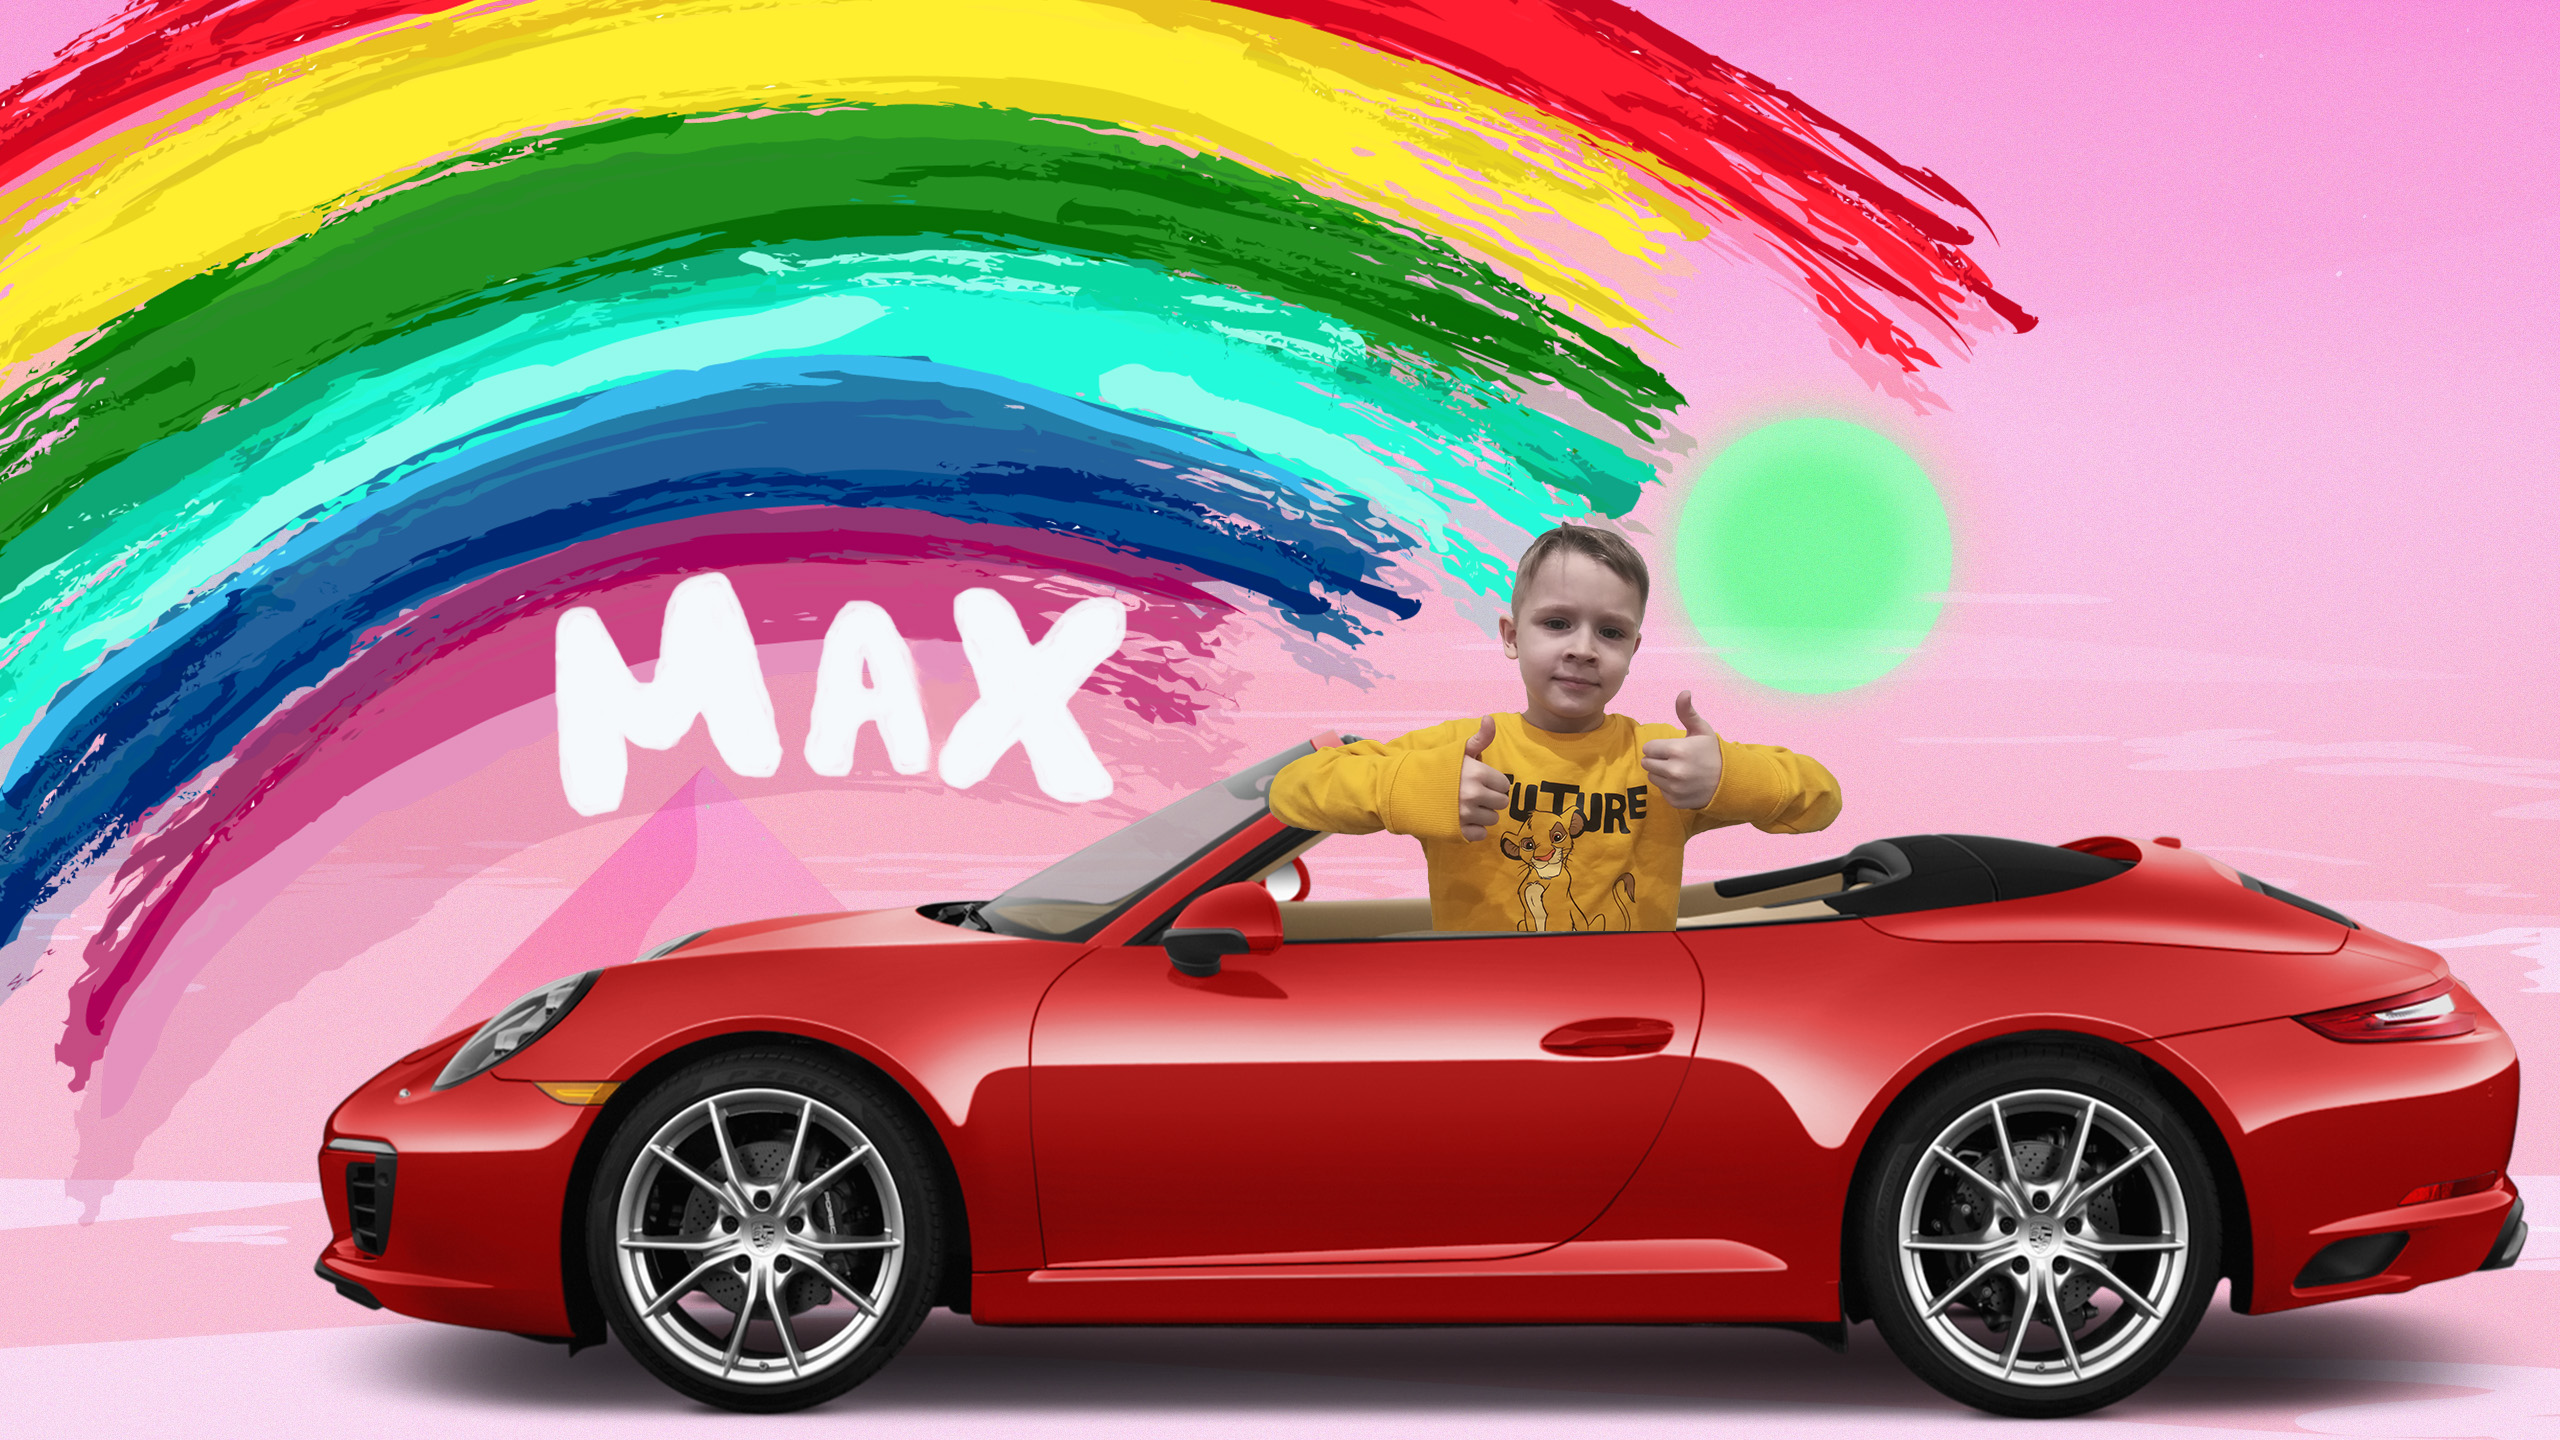 Child max. Машинка «Макс». Макс для детей. Умные машинки Макс. Малыш Макс машина.